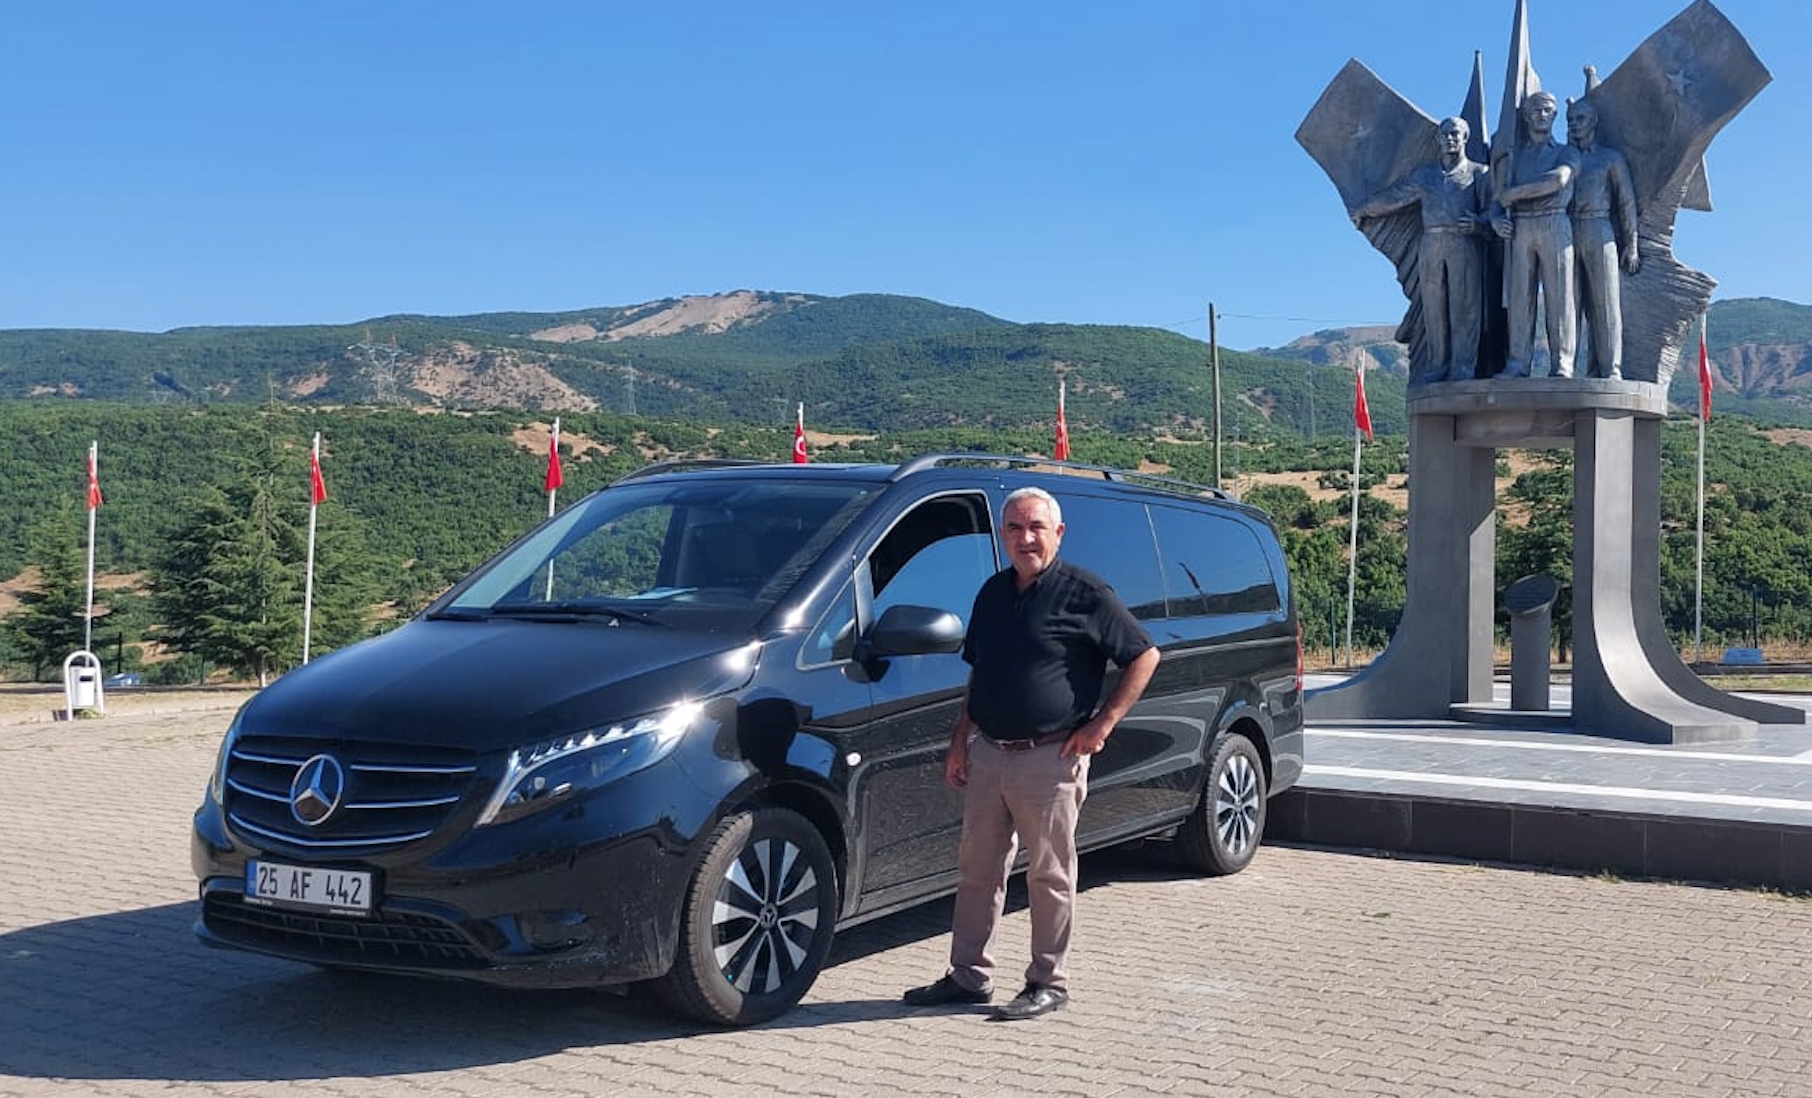 Erzurumlu Vippal’dan Temsa ve Mercedes araç yatırımı